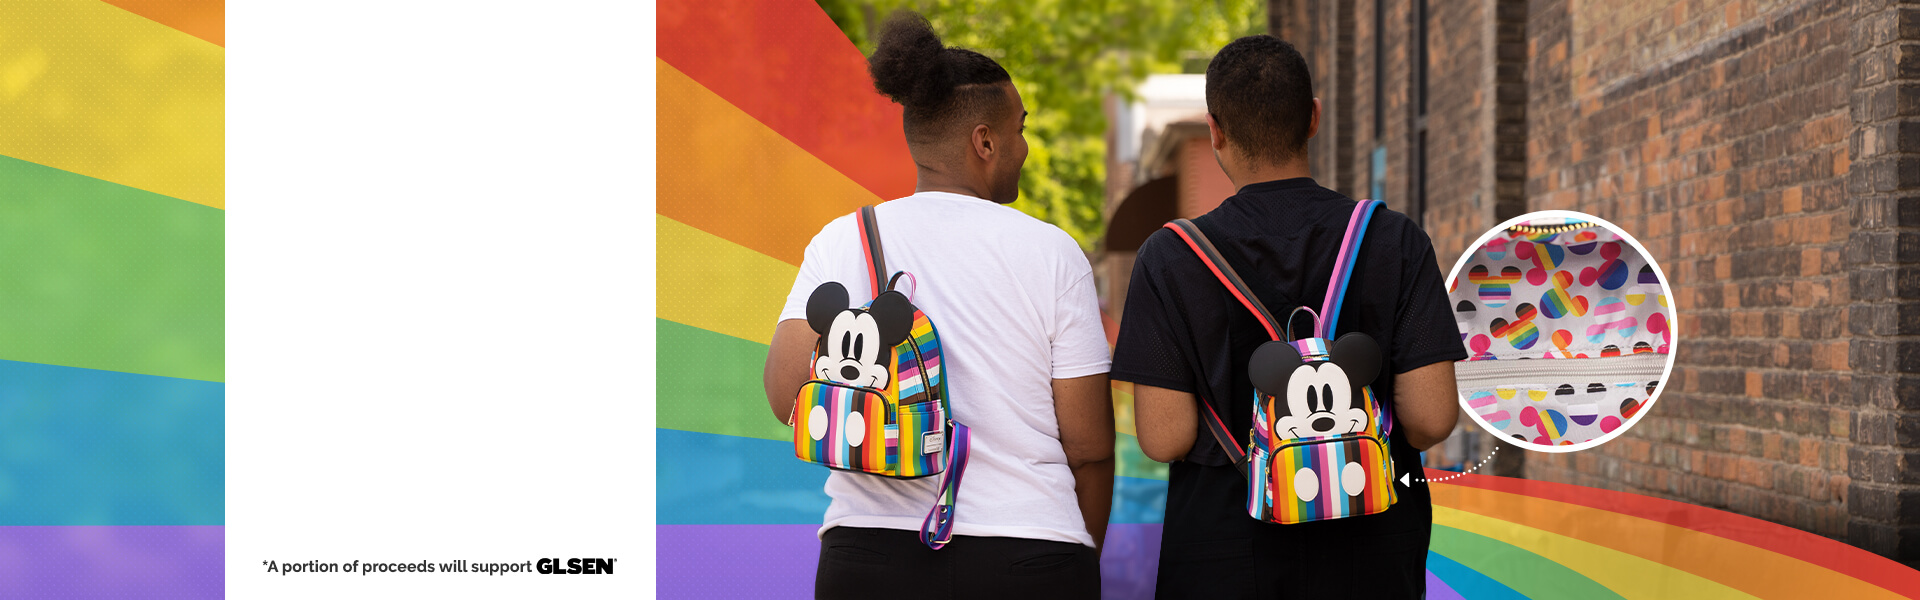 Disney Pride Backpack on FUN.com